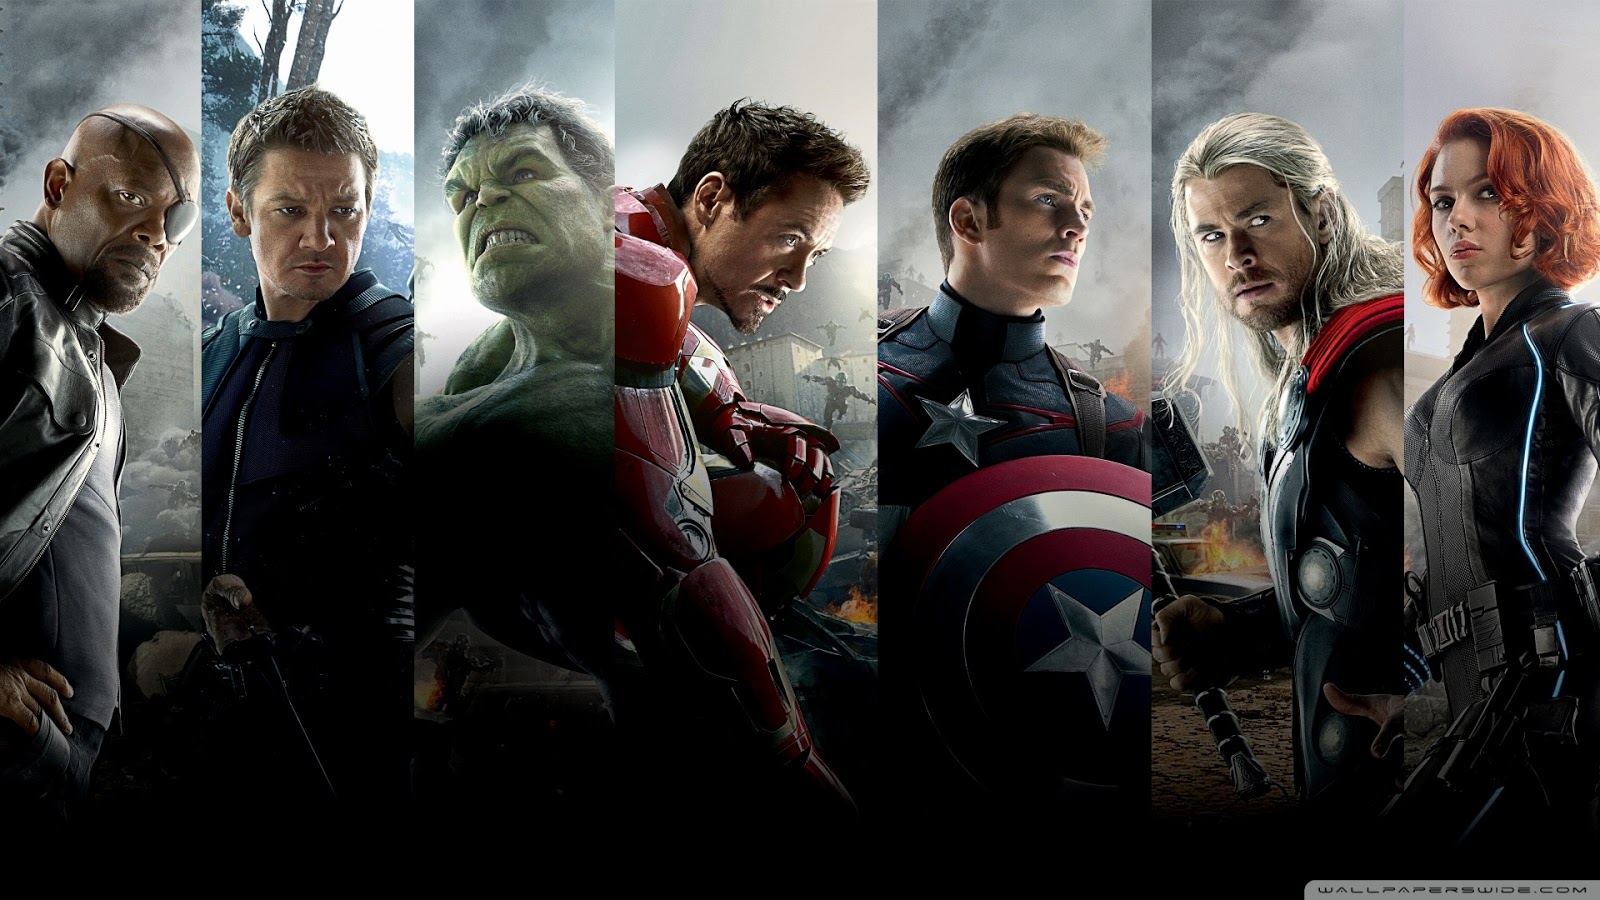 Vô số vũ khí của siêu anh hùng Marvel được bảo vệ bởi bộ sưu tập Infinity Stones huyền thoại. Những viên đá này mang những năng lực phi thường và làm nên rất nhiều câu chuyện kinh điển của vũ trụ Marvel.